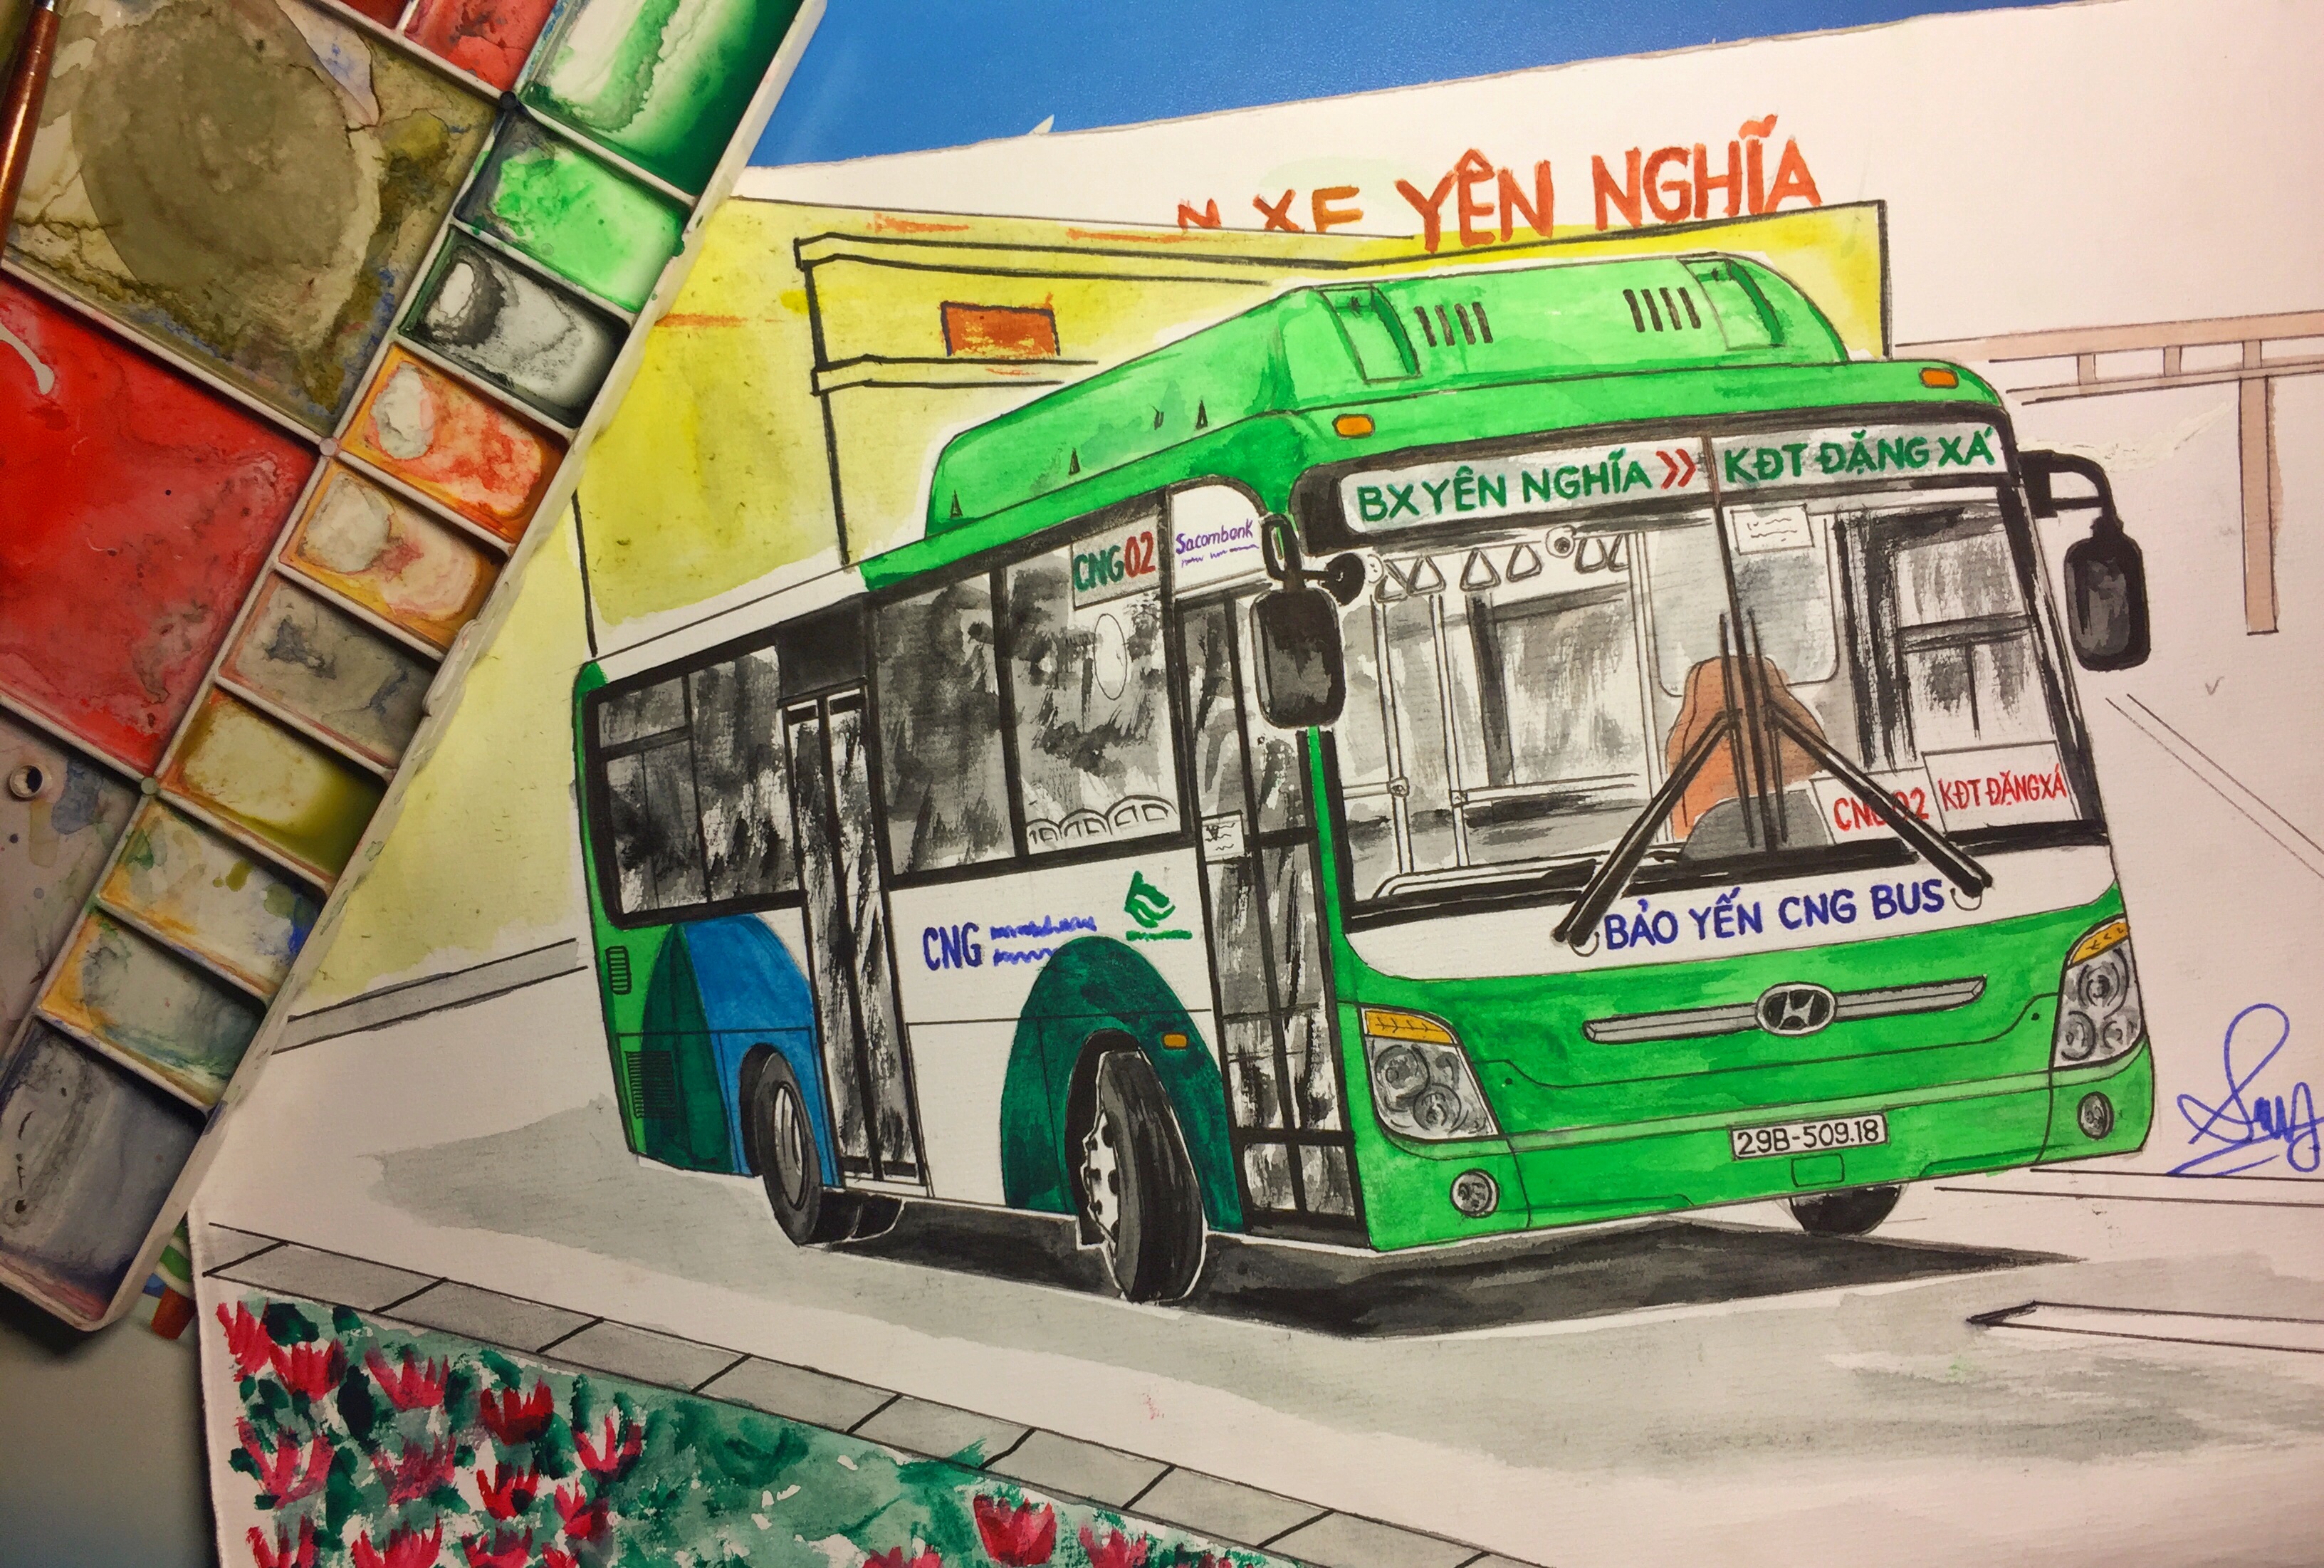 Hà Nội với những chiếc xe buýt đầy tính biểu tượng đã trở thành một ánh mắt bắt buộc của bất kỳ chuyến du lịch ở thủ đô. Tranh vẽ xe buýt Hà Nội sẽ đưa bạn vào một hành trình khám phá về sự độc đáo và nét đẹp riêng của xe buýt Hà Nội.